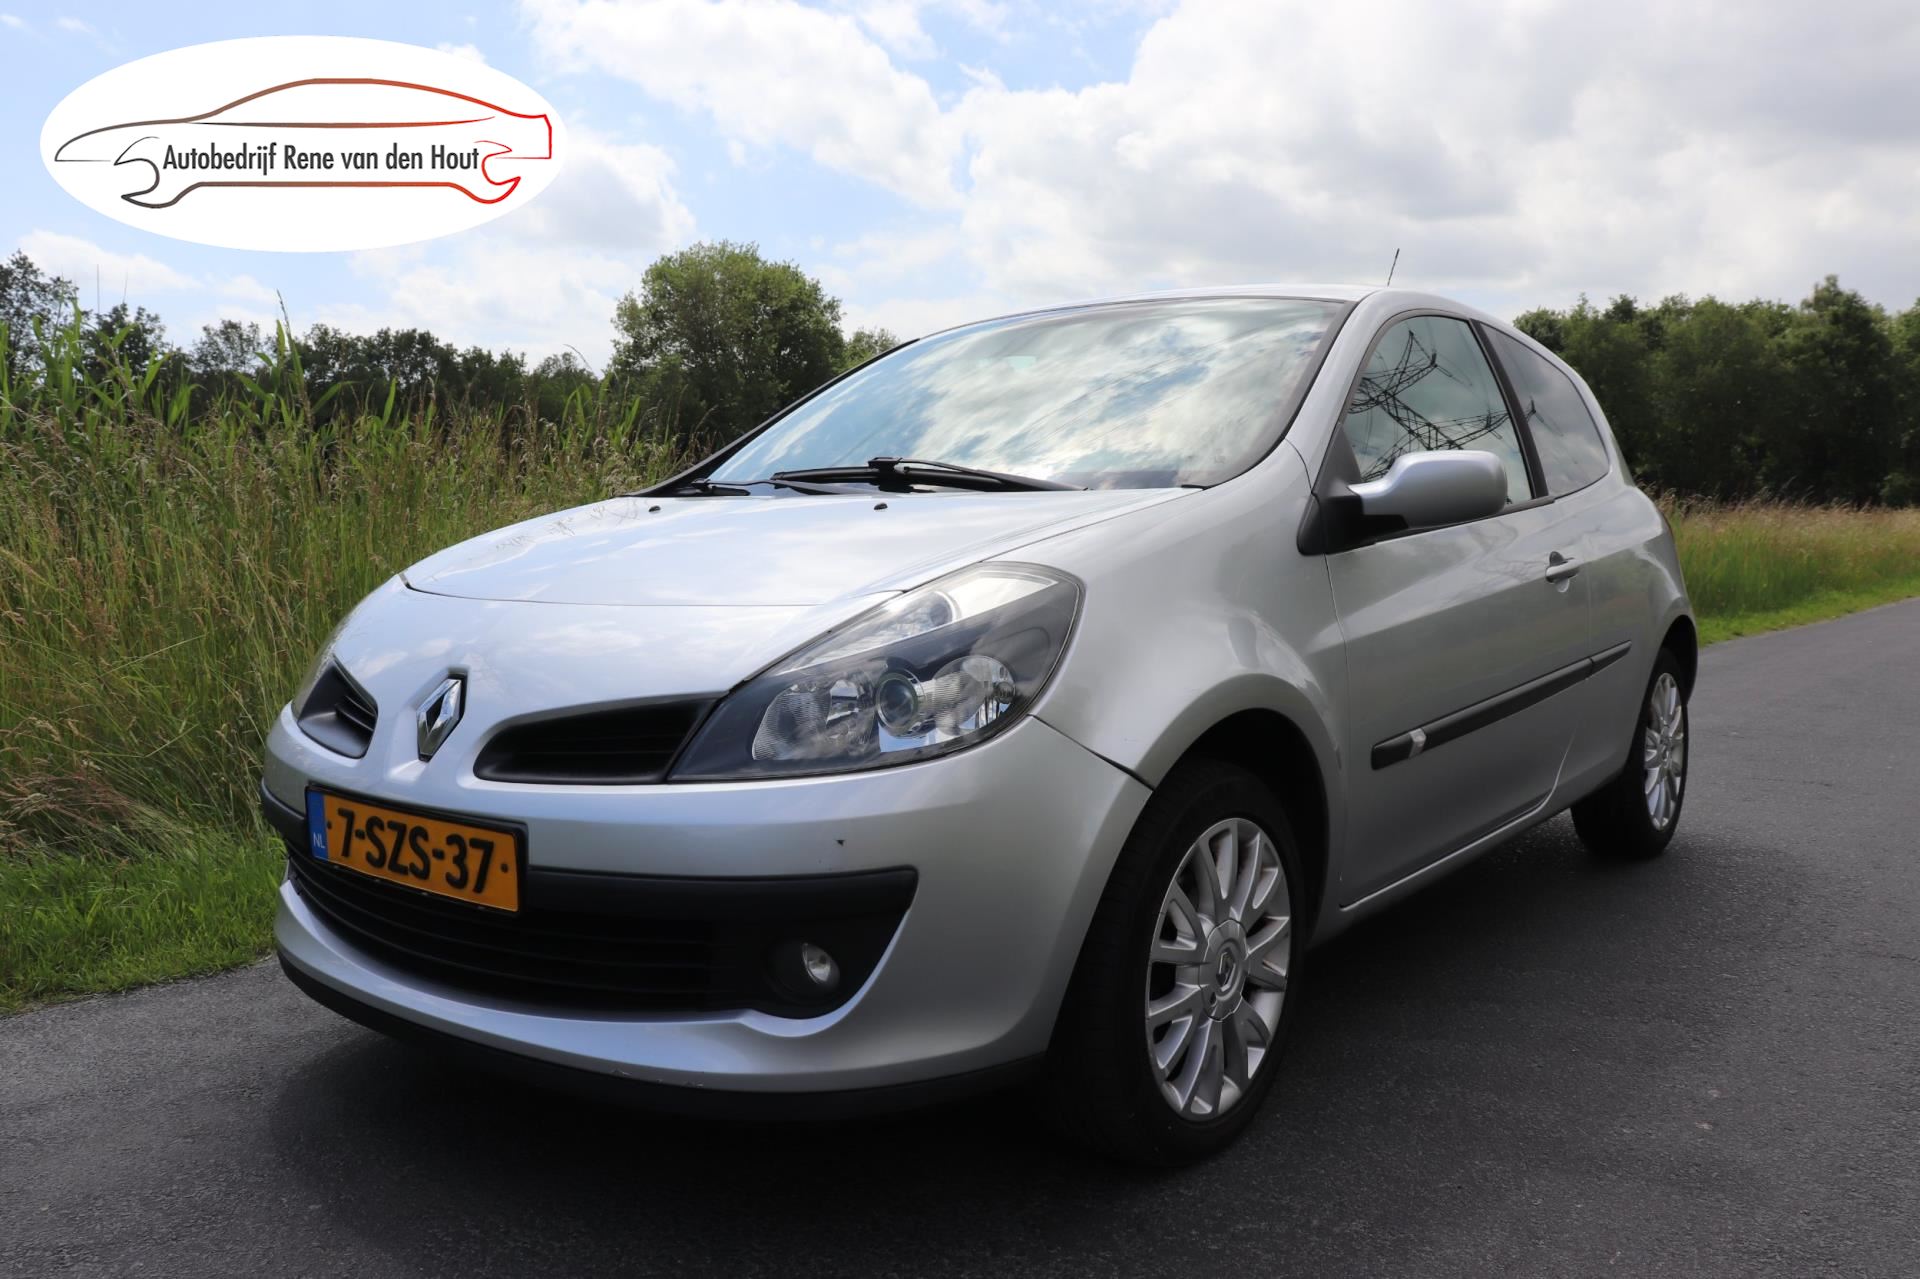 Renault Clio occasion - Autobedrijf Rene van den Hout